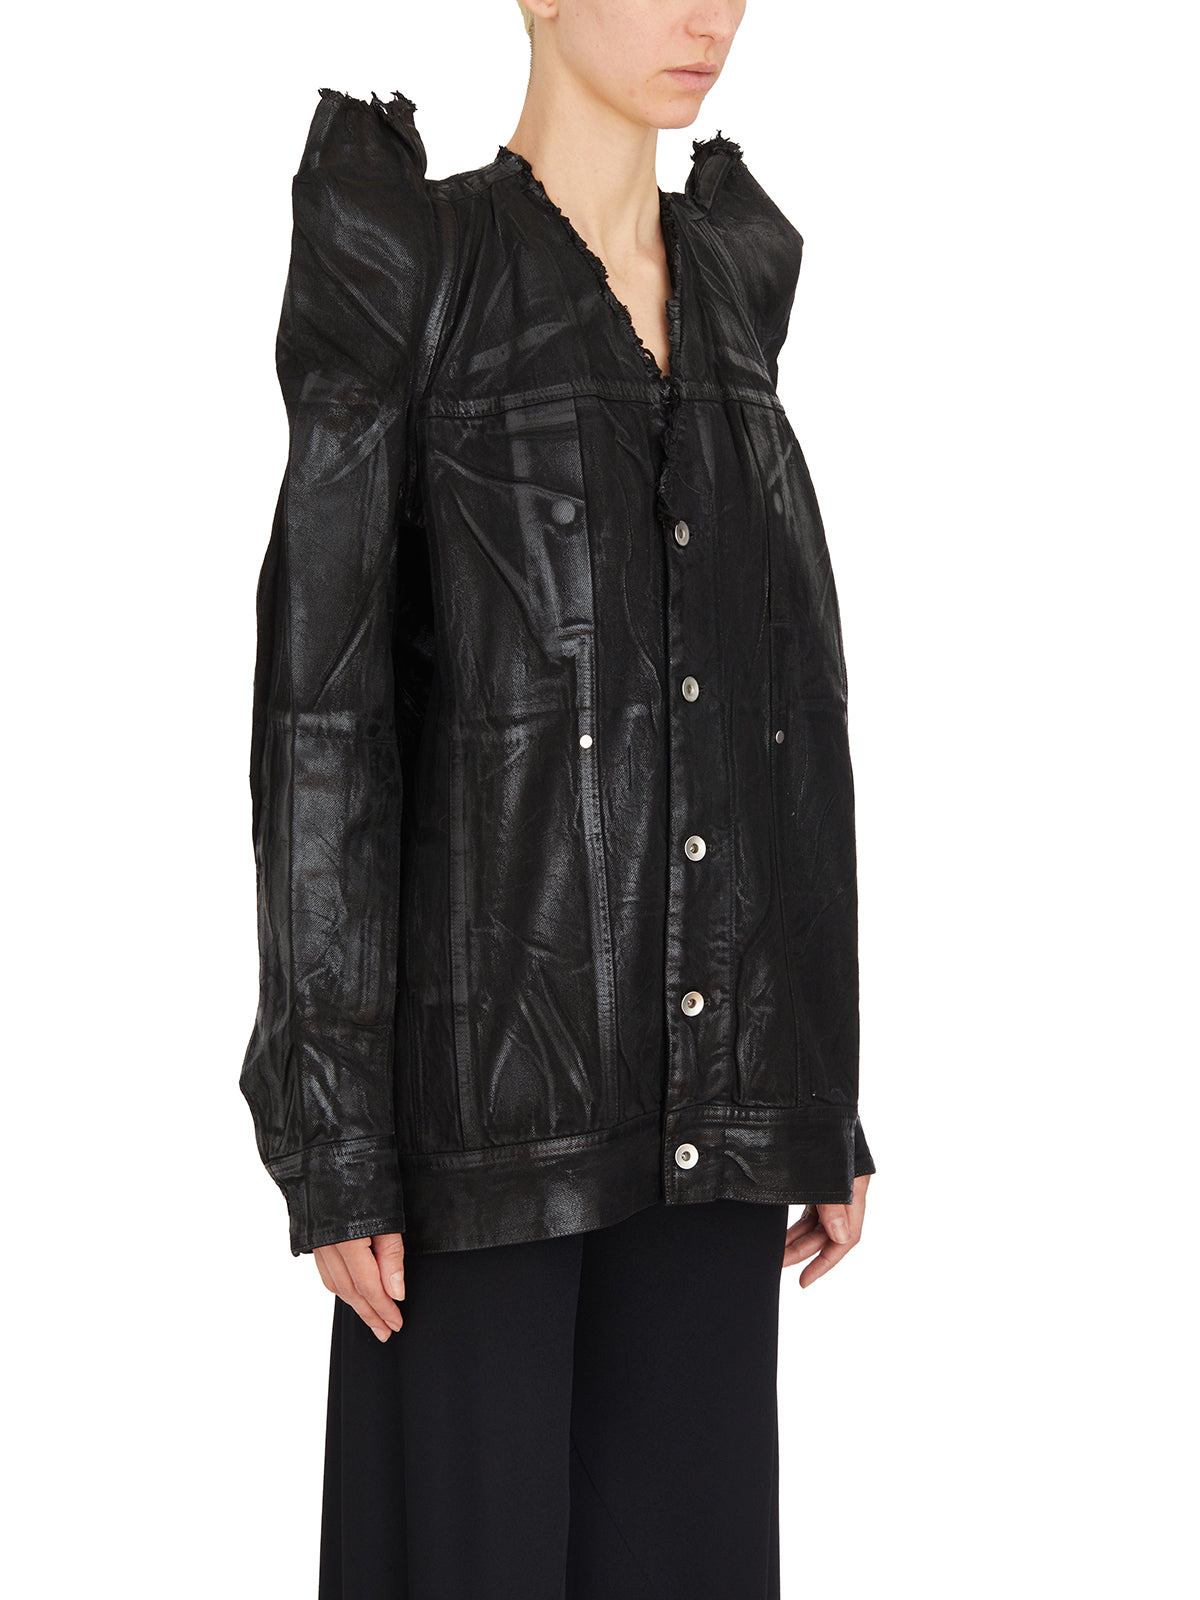 Áo khoác công sở bằng vải cotton đen có cổ áo và tay áo có khóa kéo cho nữ